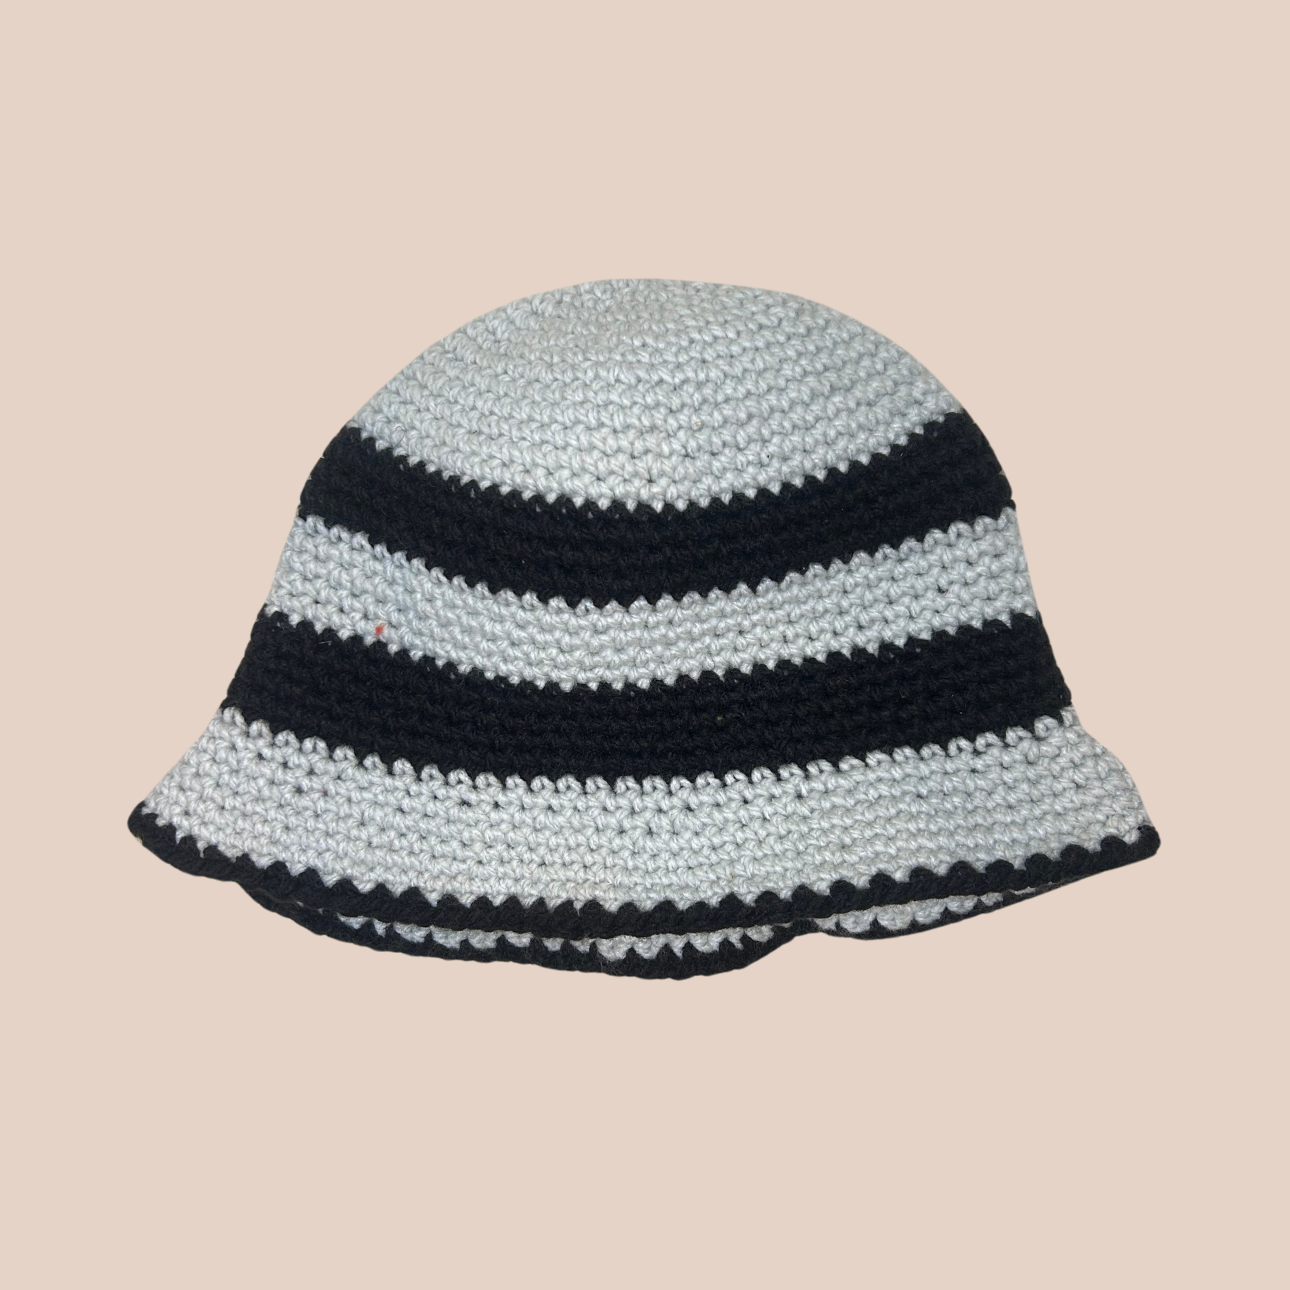 Un bucket hat rayé noir et gris, crocheté en laine et acrylique